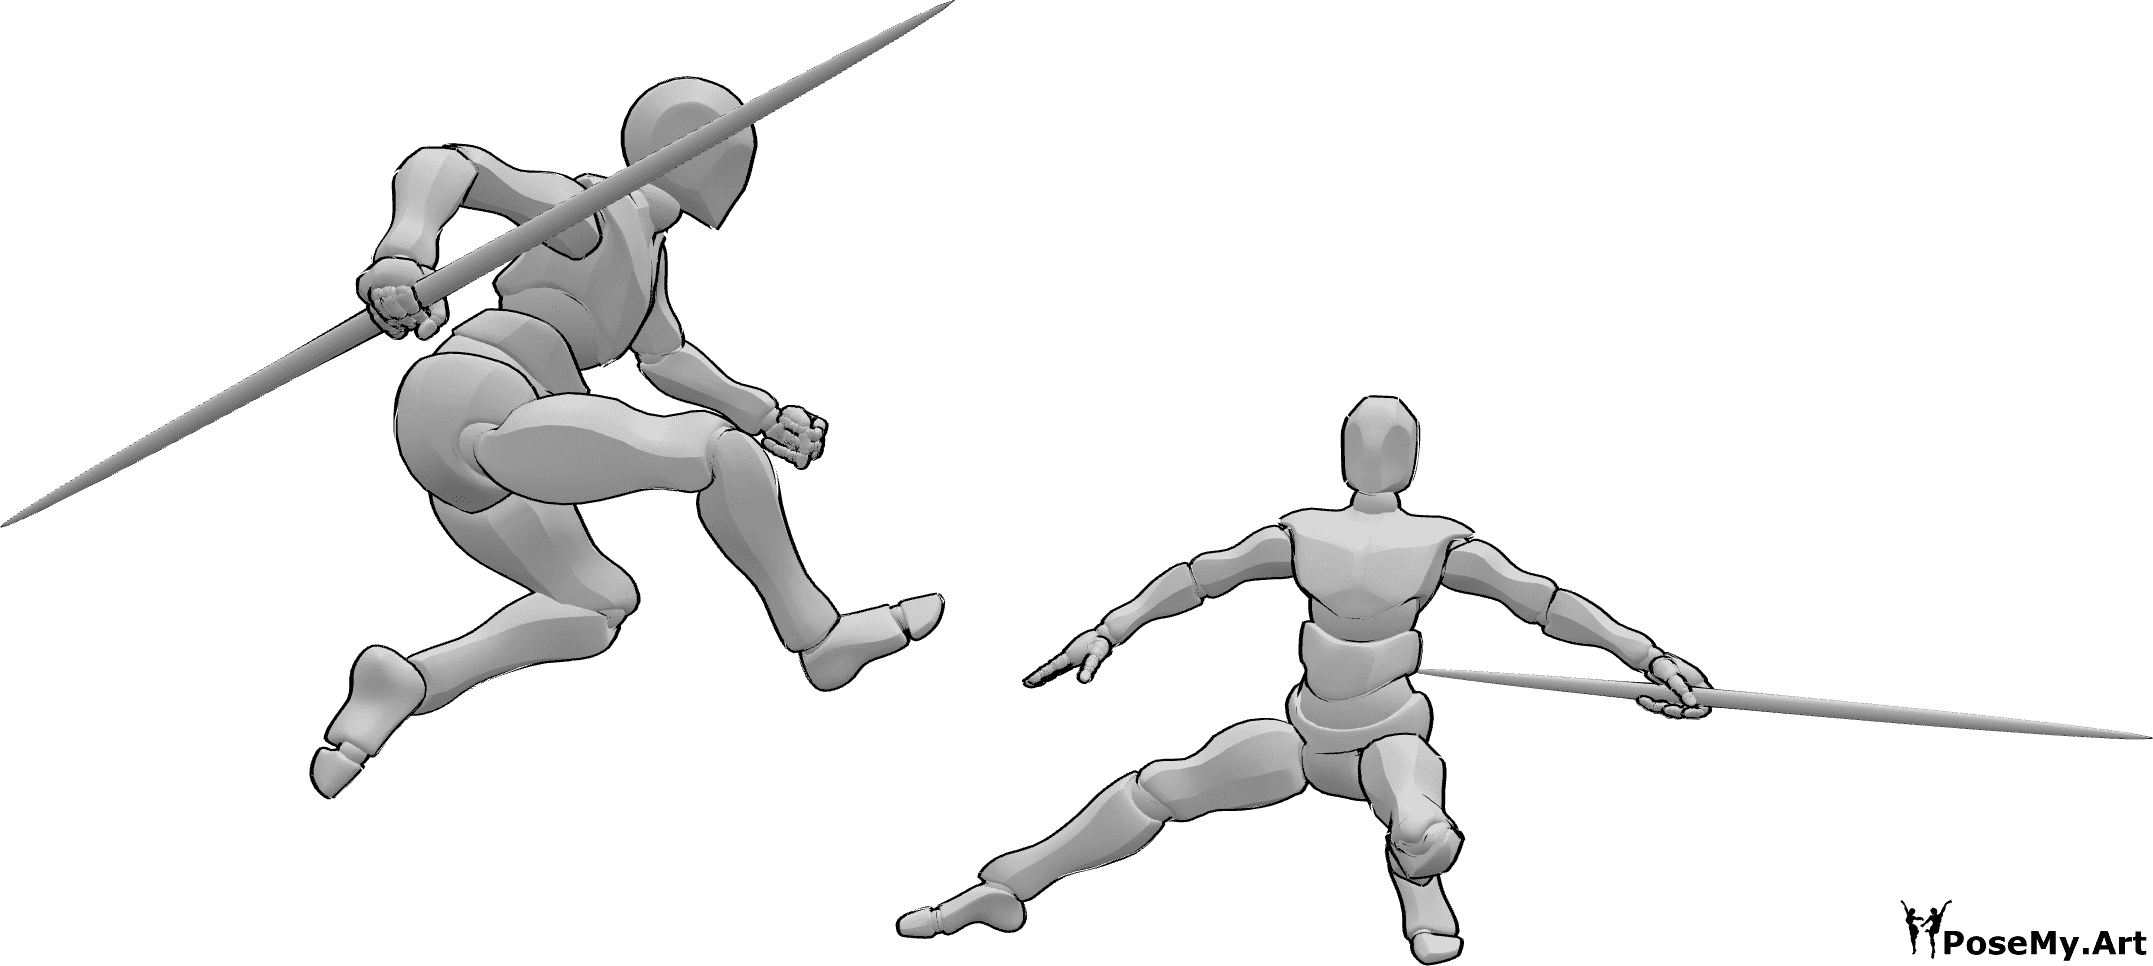 Référence des poses- Les bâtons de combat sautent la pose - Deux hommes se battent avec des bâtons, l'un d'eux saute la pose